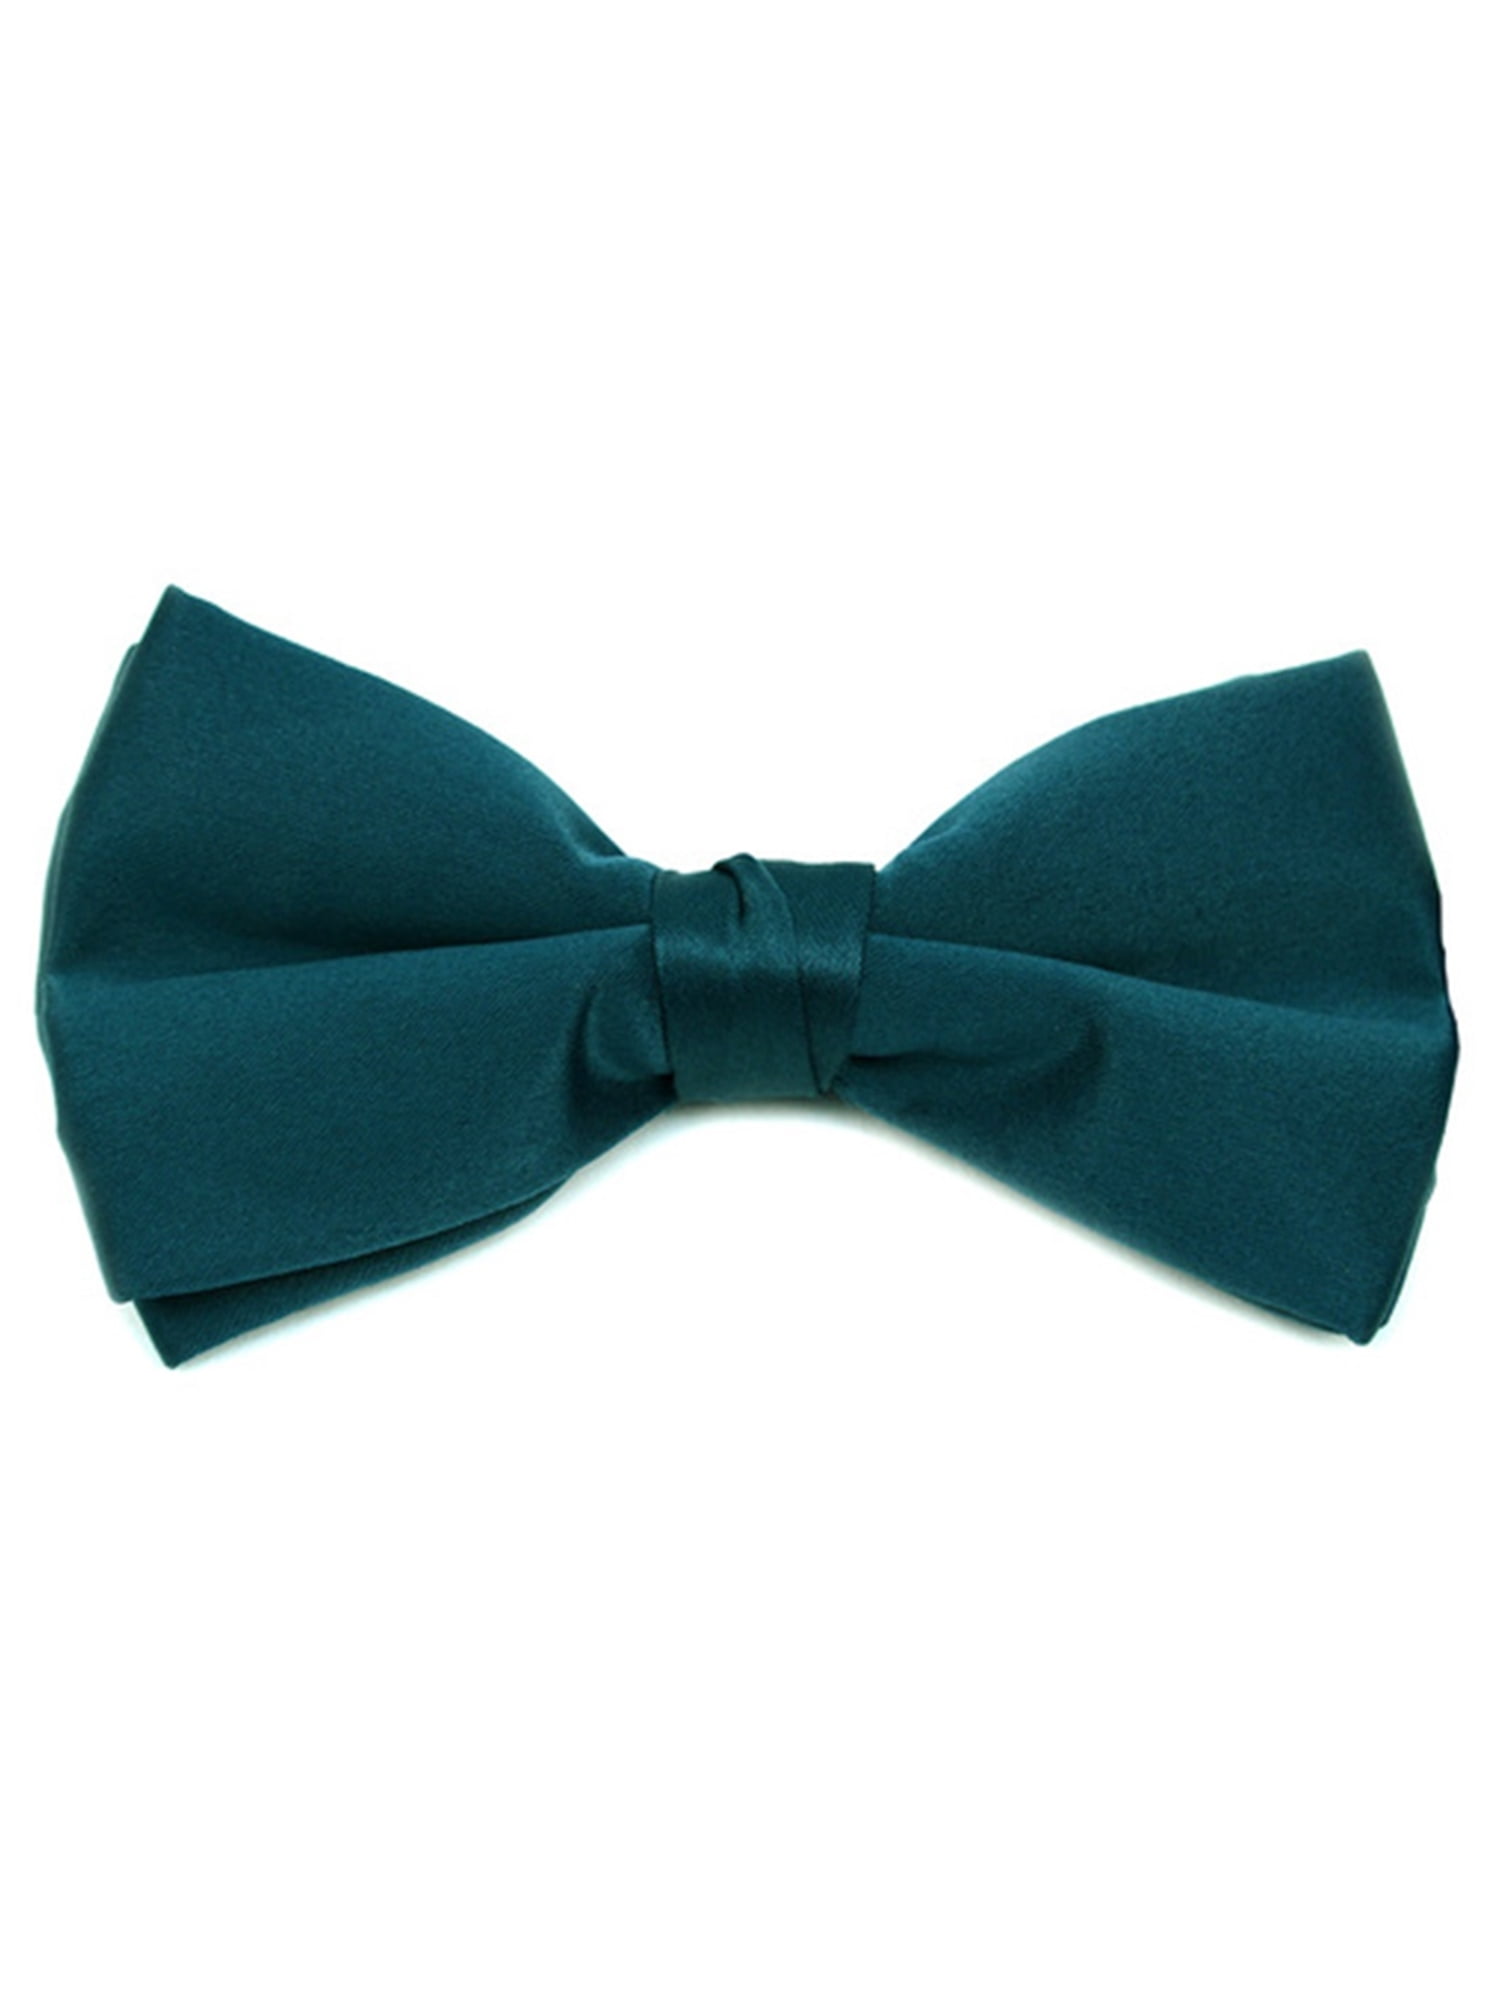 Mens Pre-tied Adjustable Length Bow Tie Formal Tuxedo Solid Color